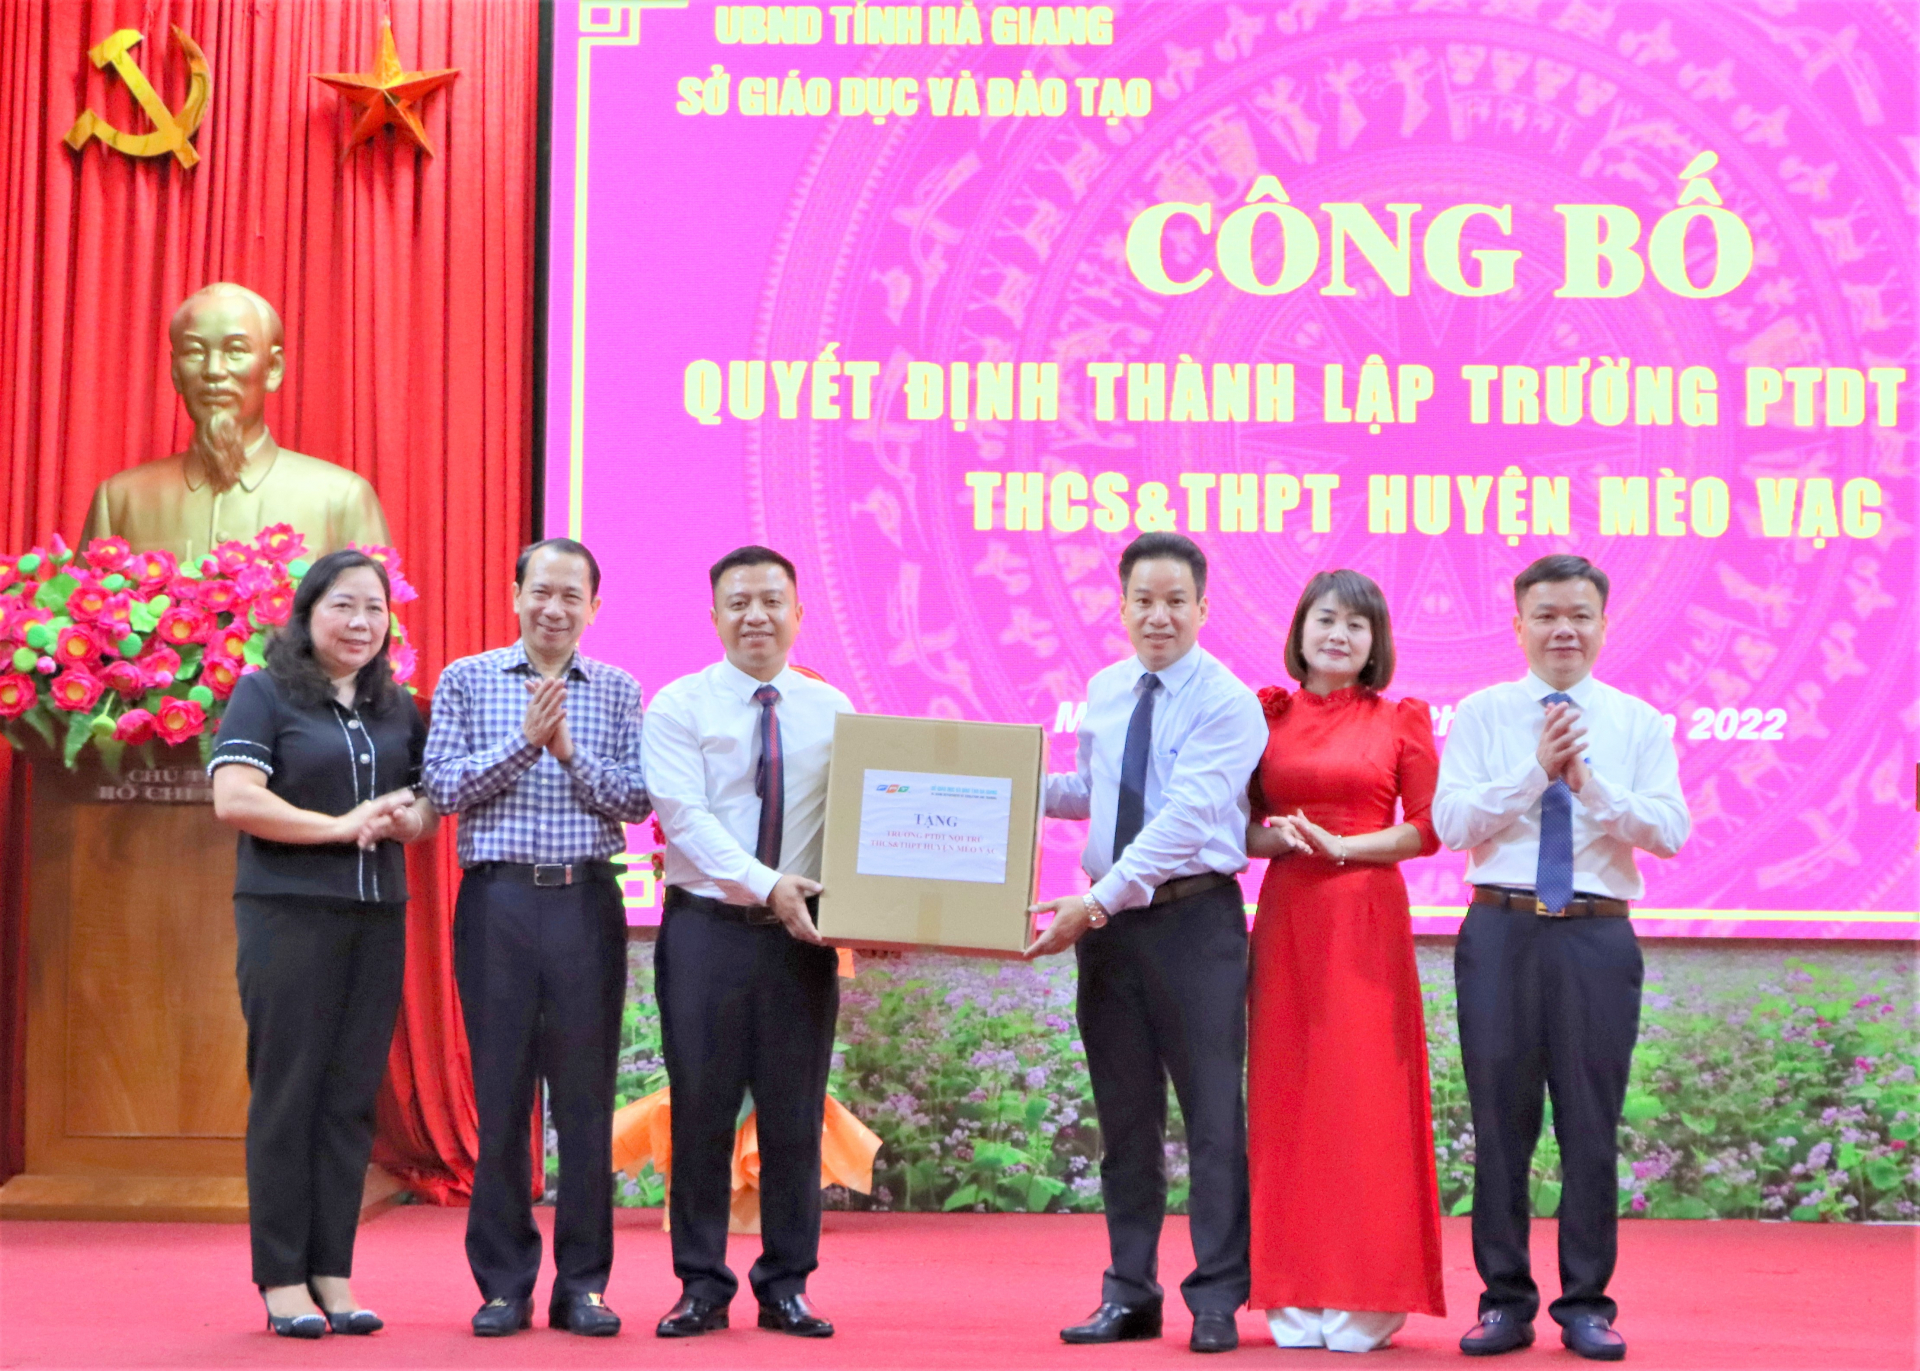 Sở GD&ĐT trao tặng máy tính cho Trường Phổ thông Dân tộc Nội trú – THCS và THPT huyện Mèo Vạc.